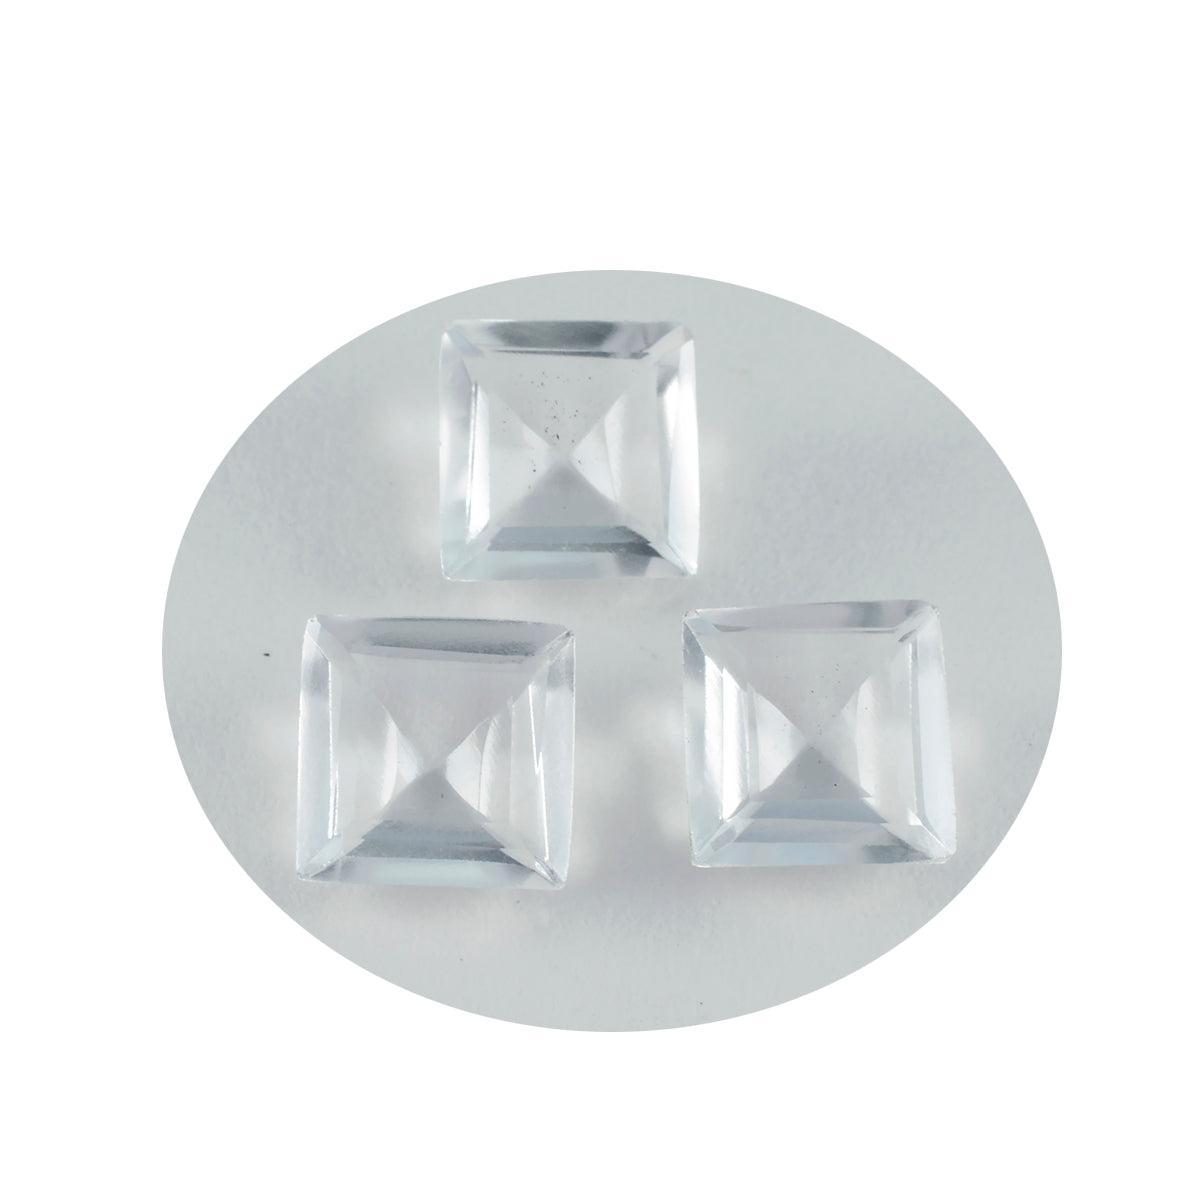 Riyogems 1 pieza de cuarzo de cristal blanco facetado de 15x15 mm, forma cuadrada, piedra preciosa suelta de calidad fantástica